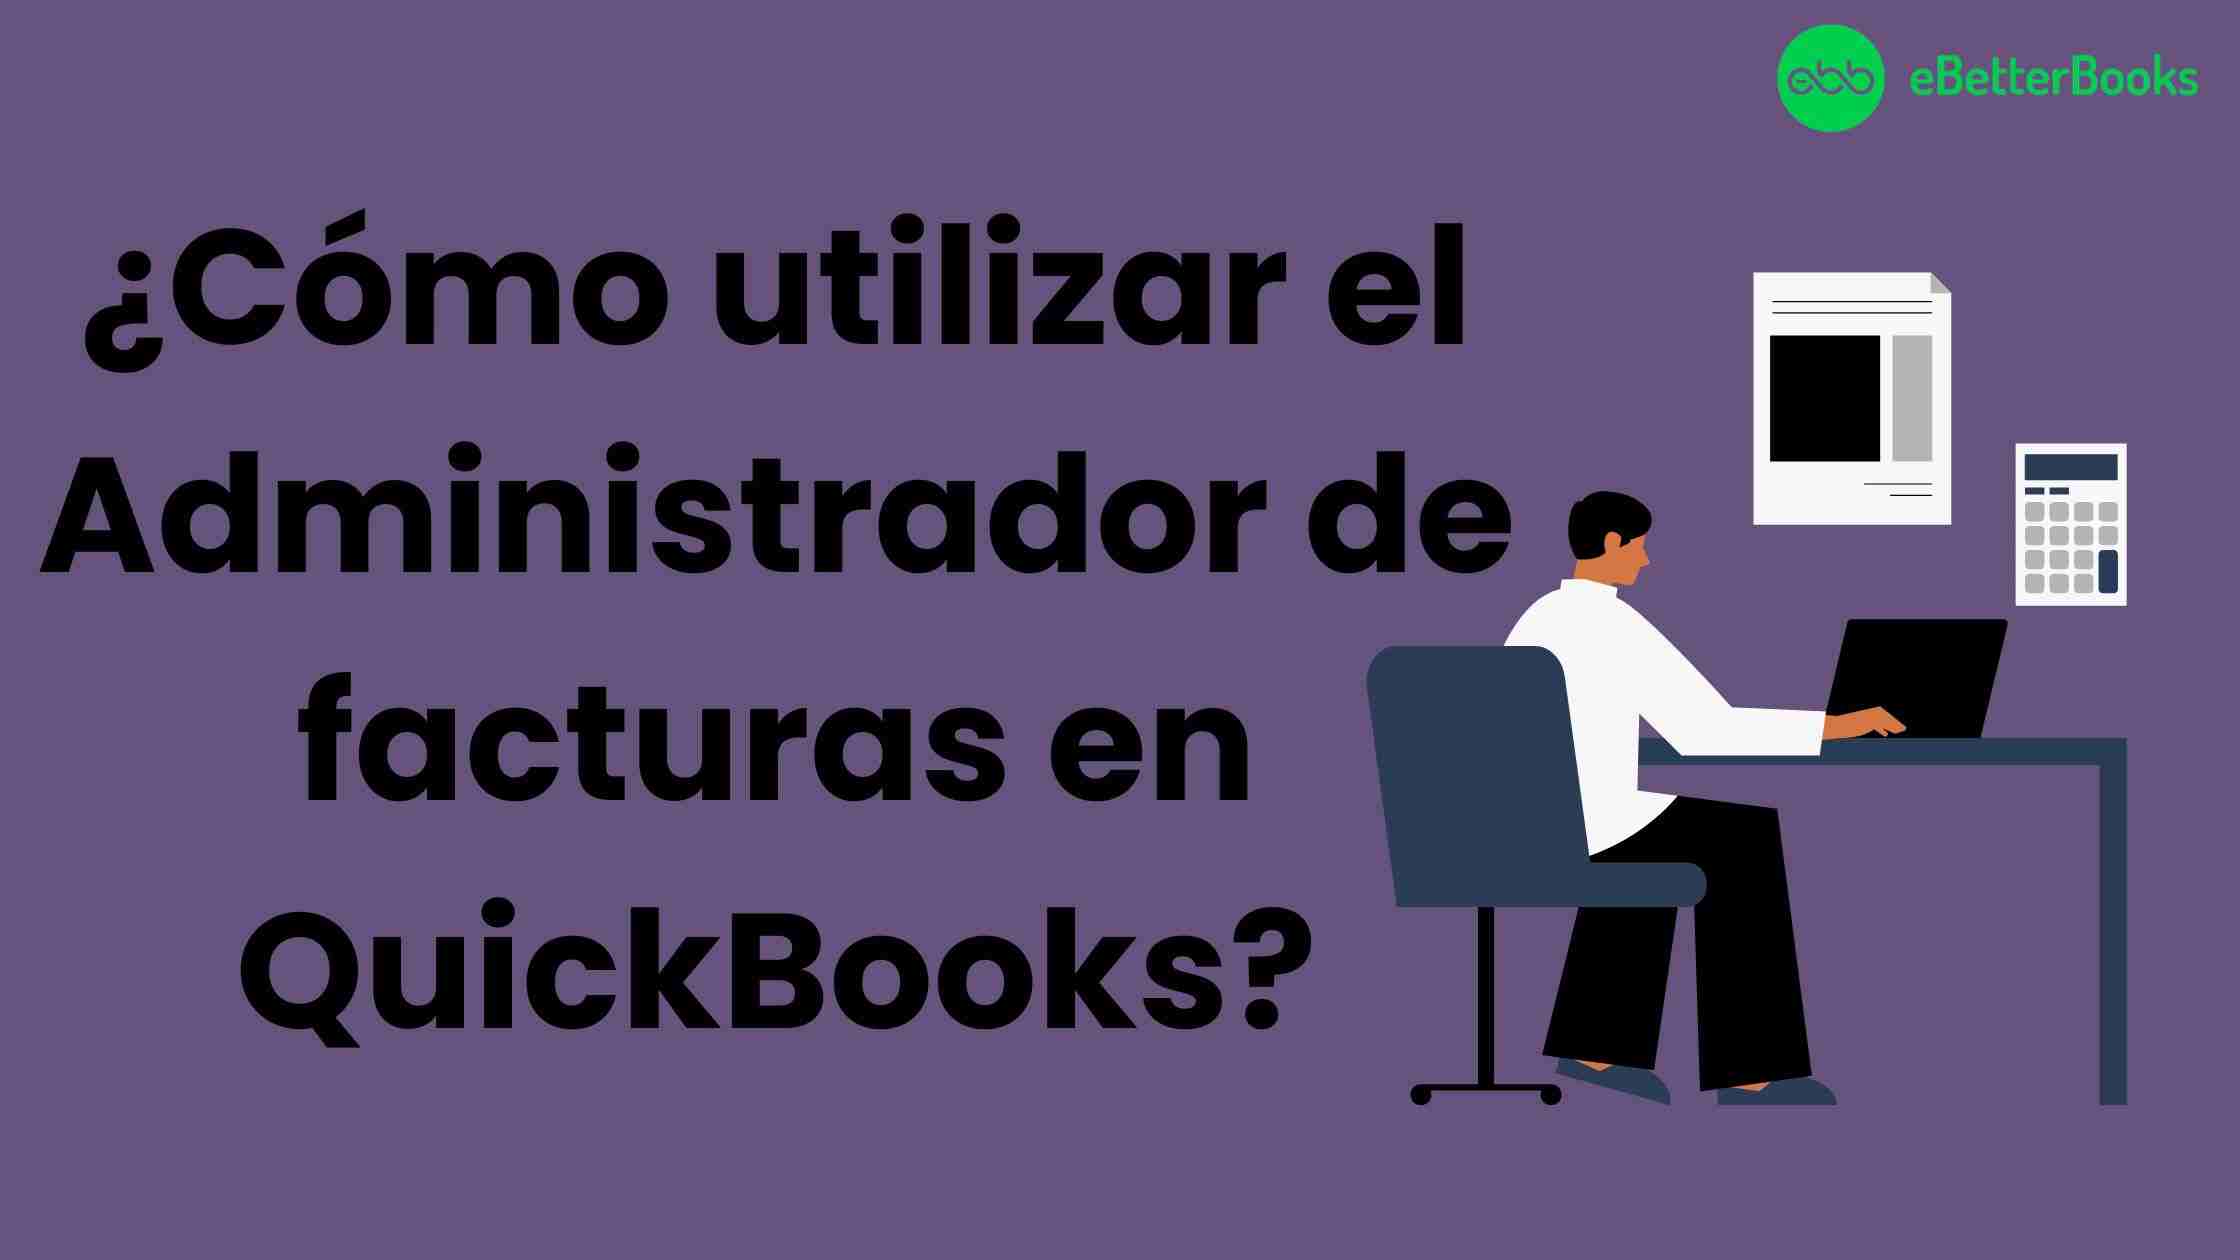 ¿Cómo utilizar el Administrador de facturas en QuickBooks?